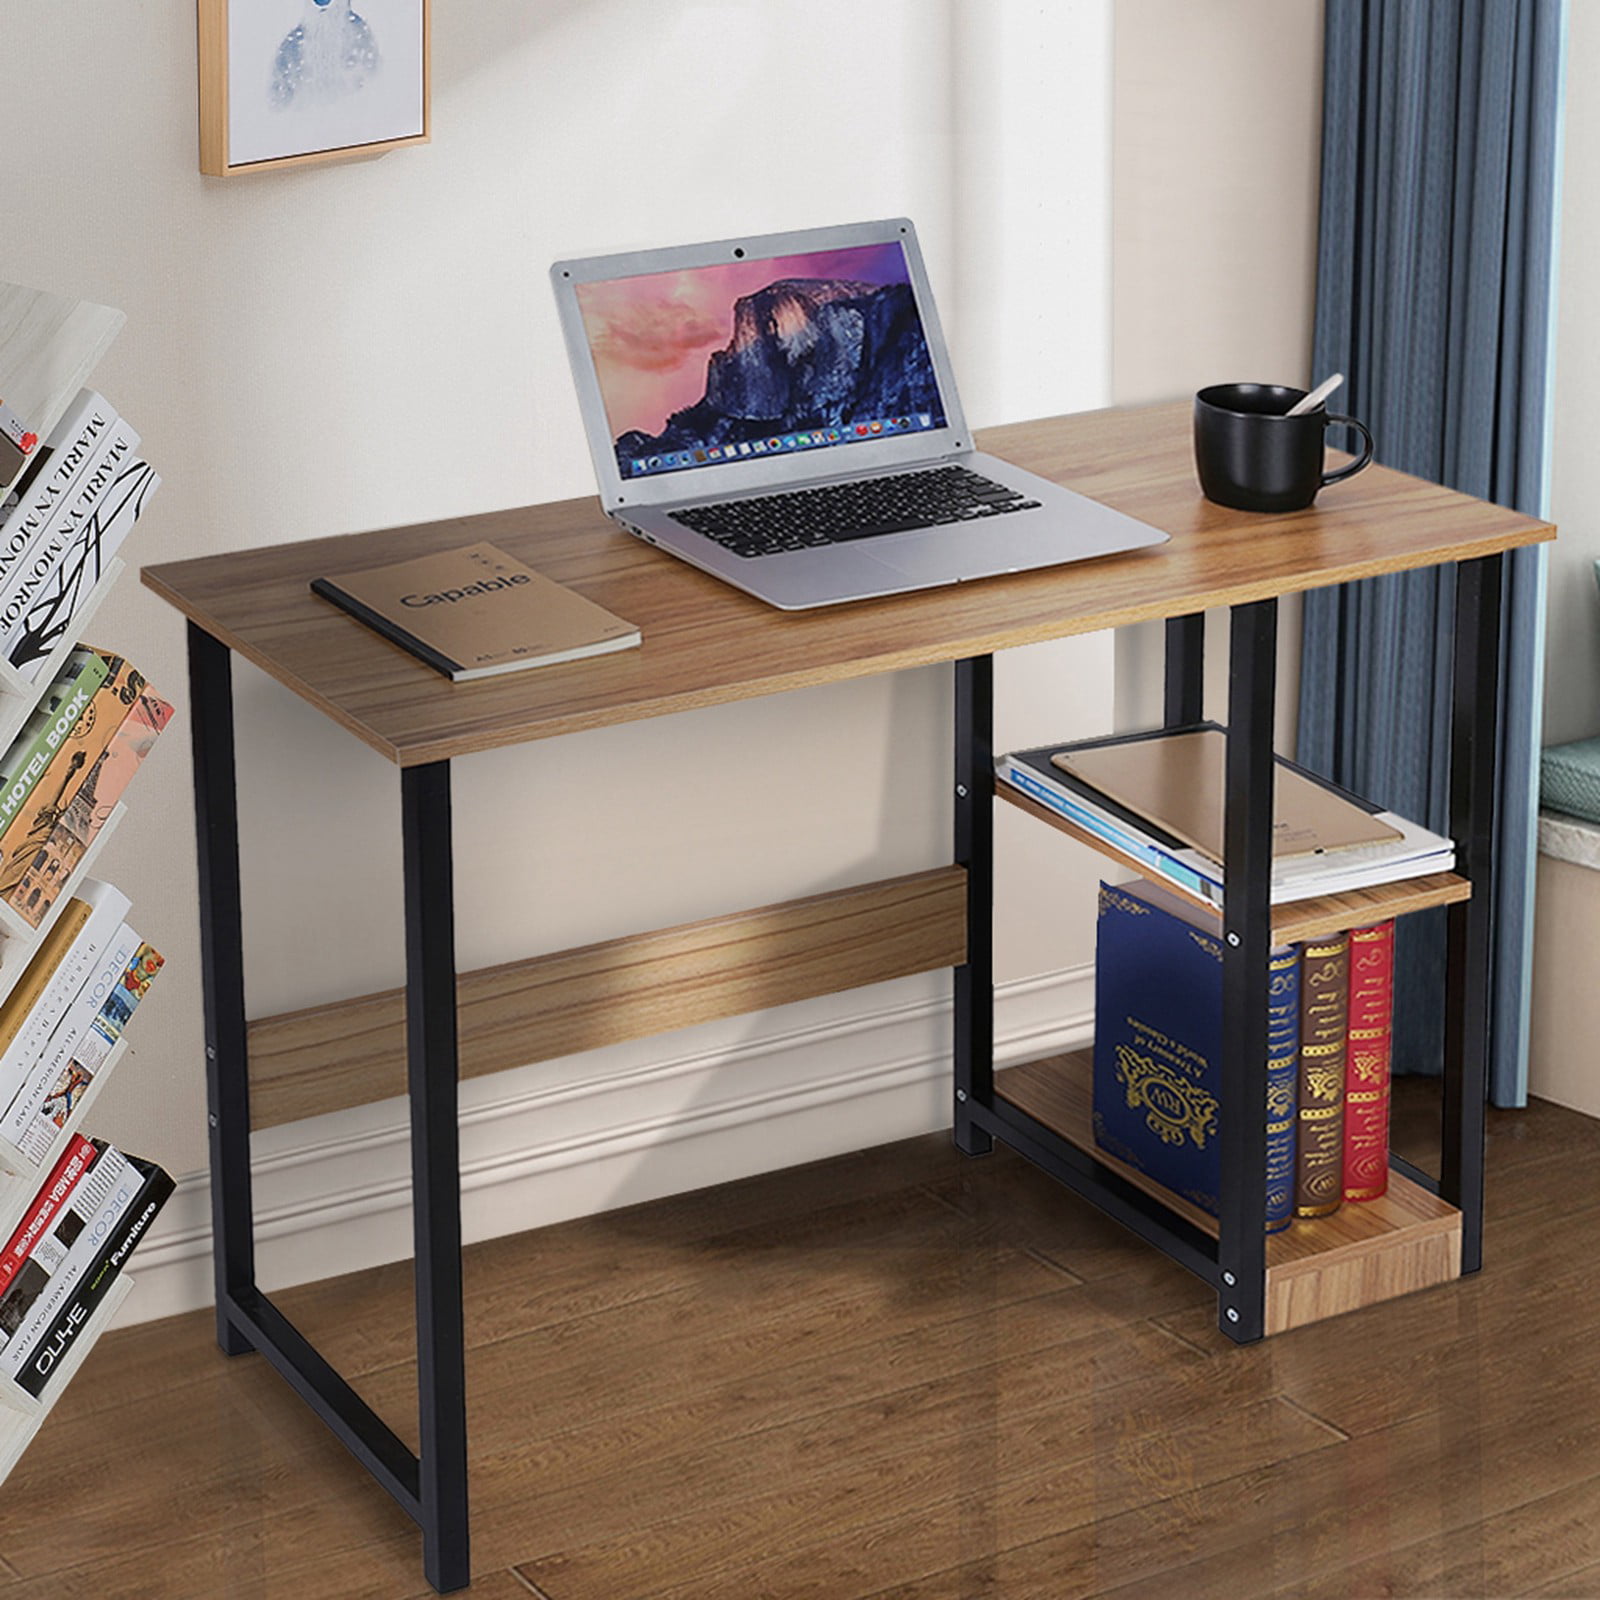 Office Desk Workstation Home Desktop Computer Desk Bedroom Laptop Study Table 